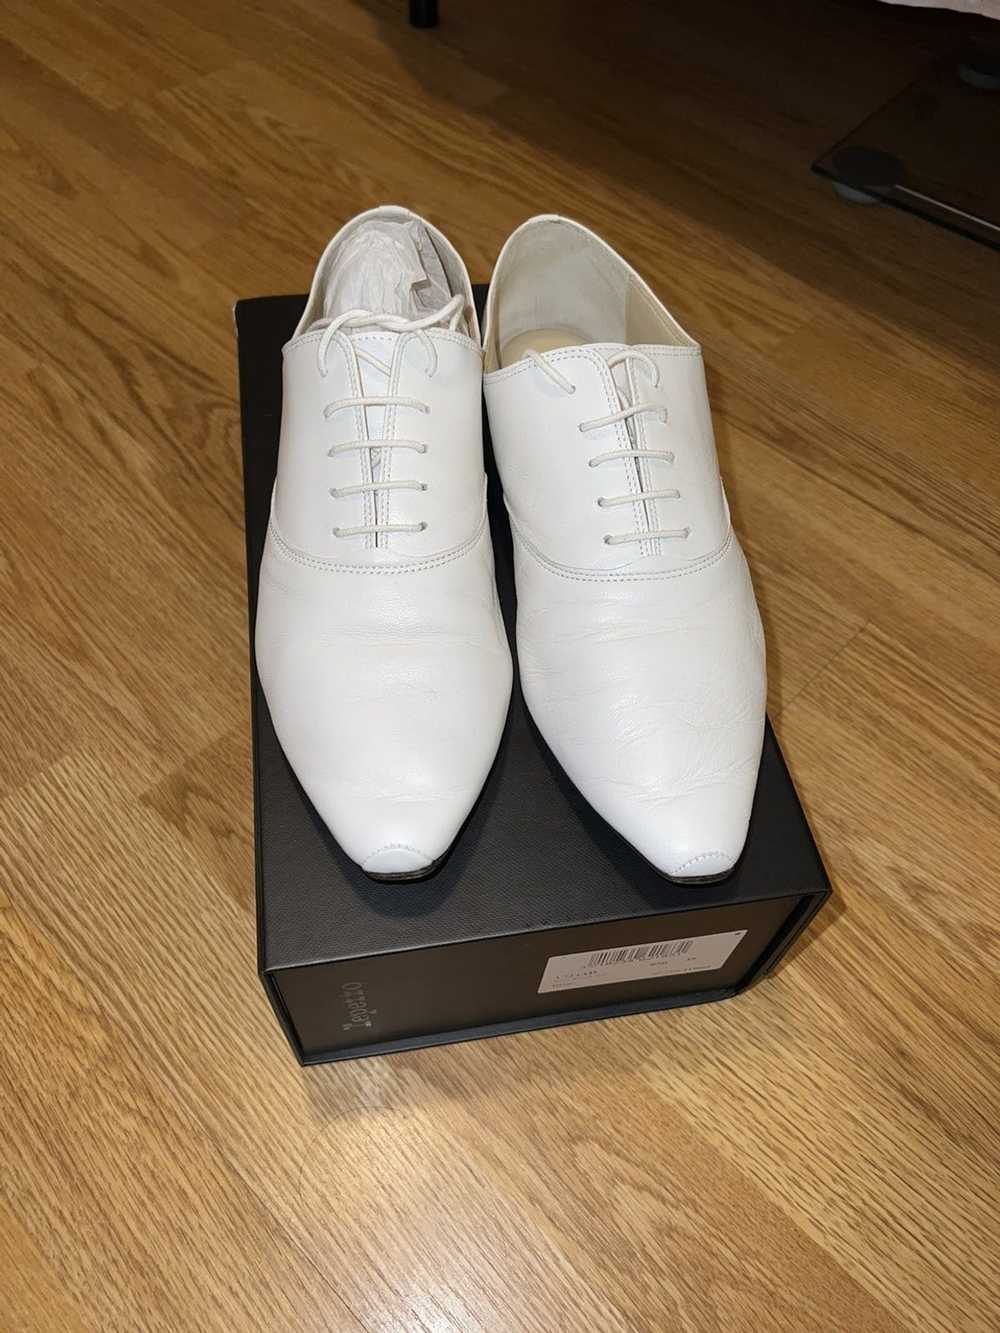 Repetto Repetto White Roy Oxford Shoes - image 4